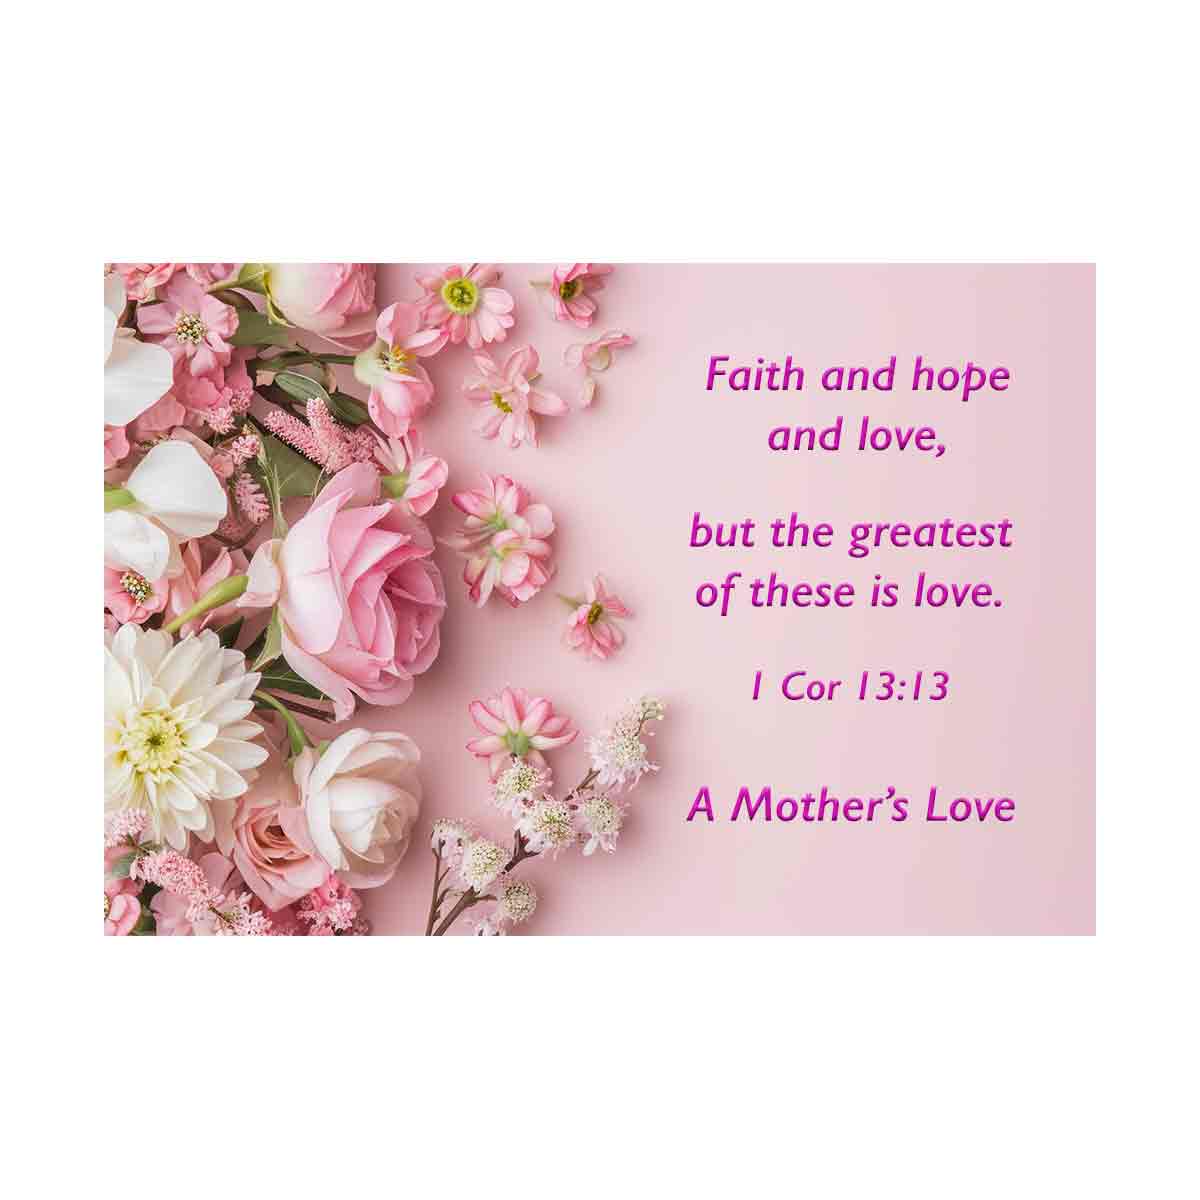 Faith and Love